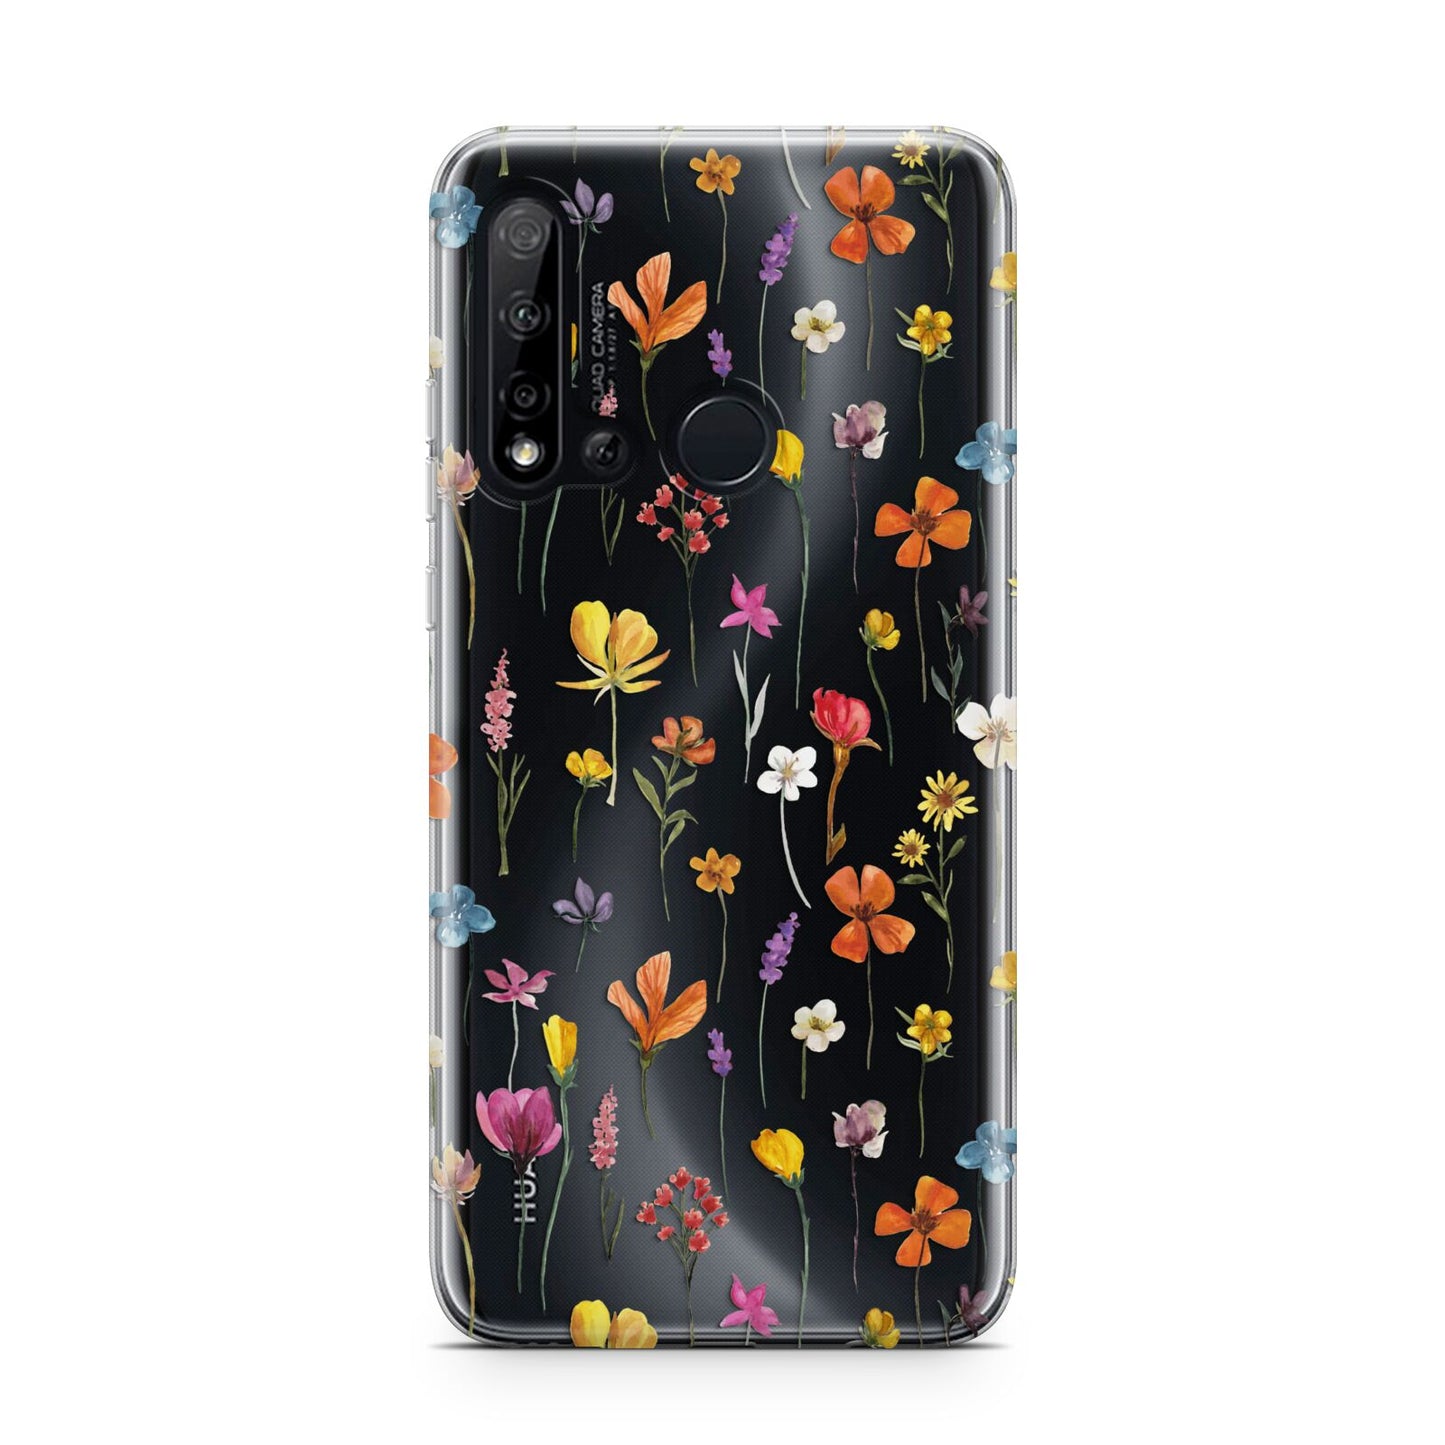 Botanical Floral Huawei P20 Lite 5G Phone Case